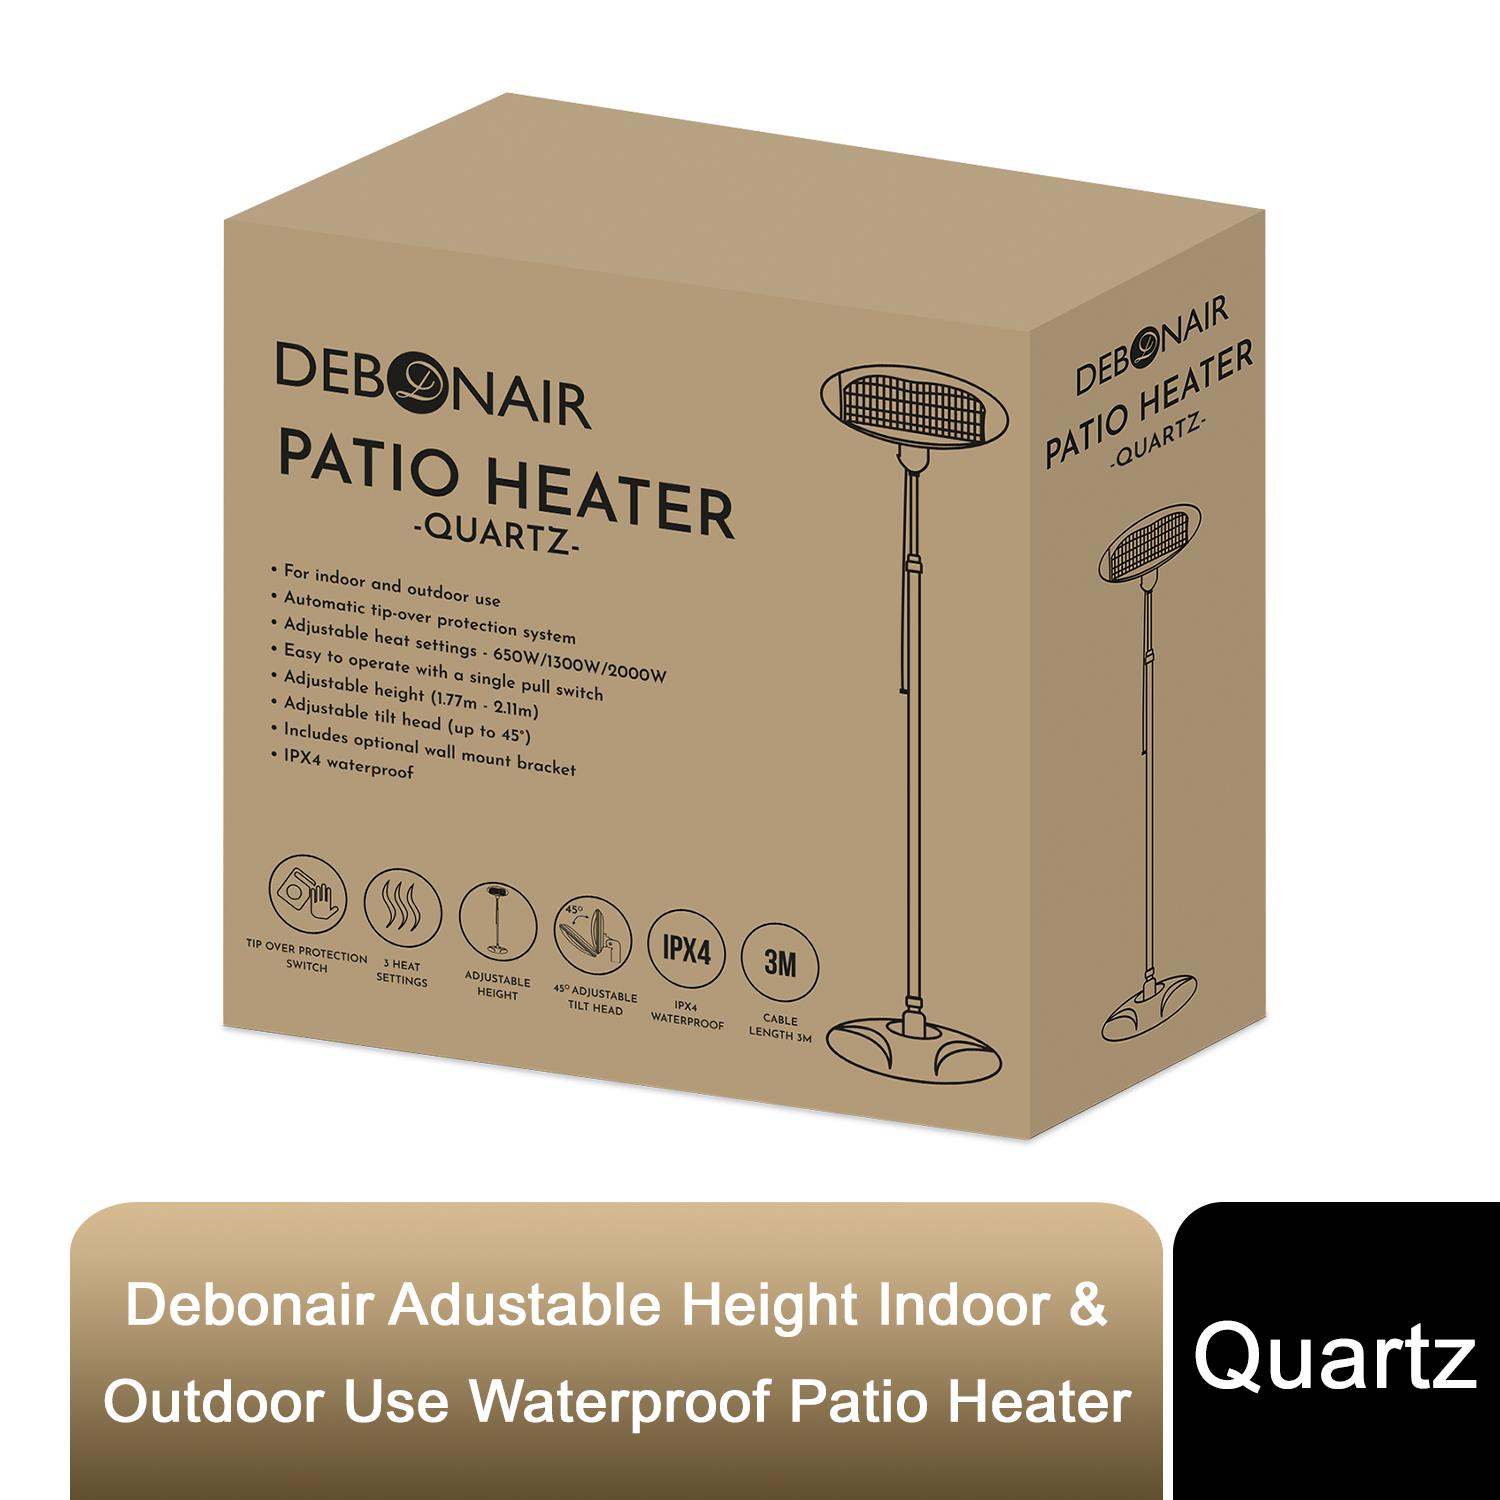 Debonair Adustable Height Indoor & Outdoor Use Waterproof Patio Heater – Quartz